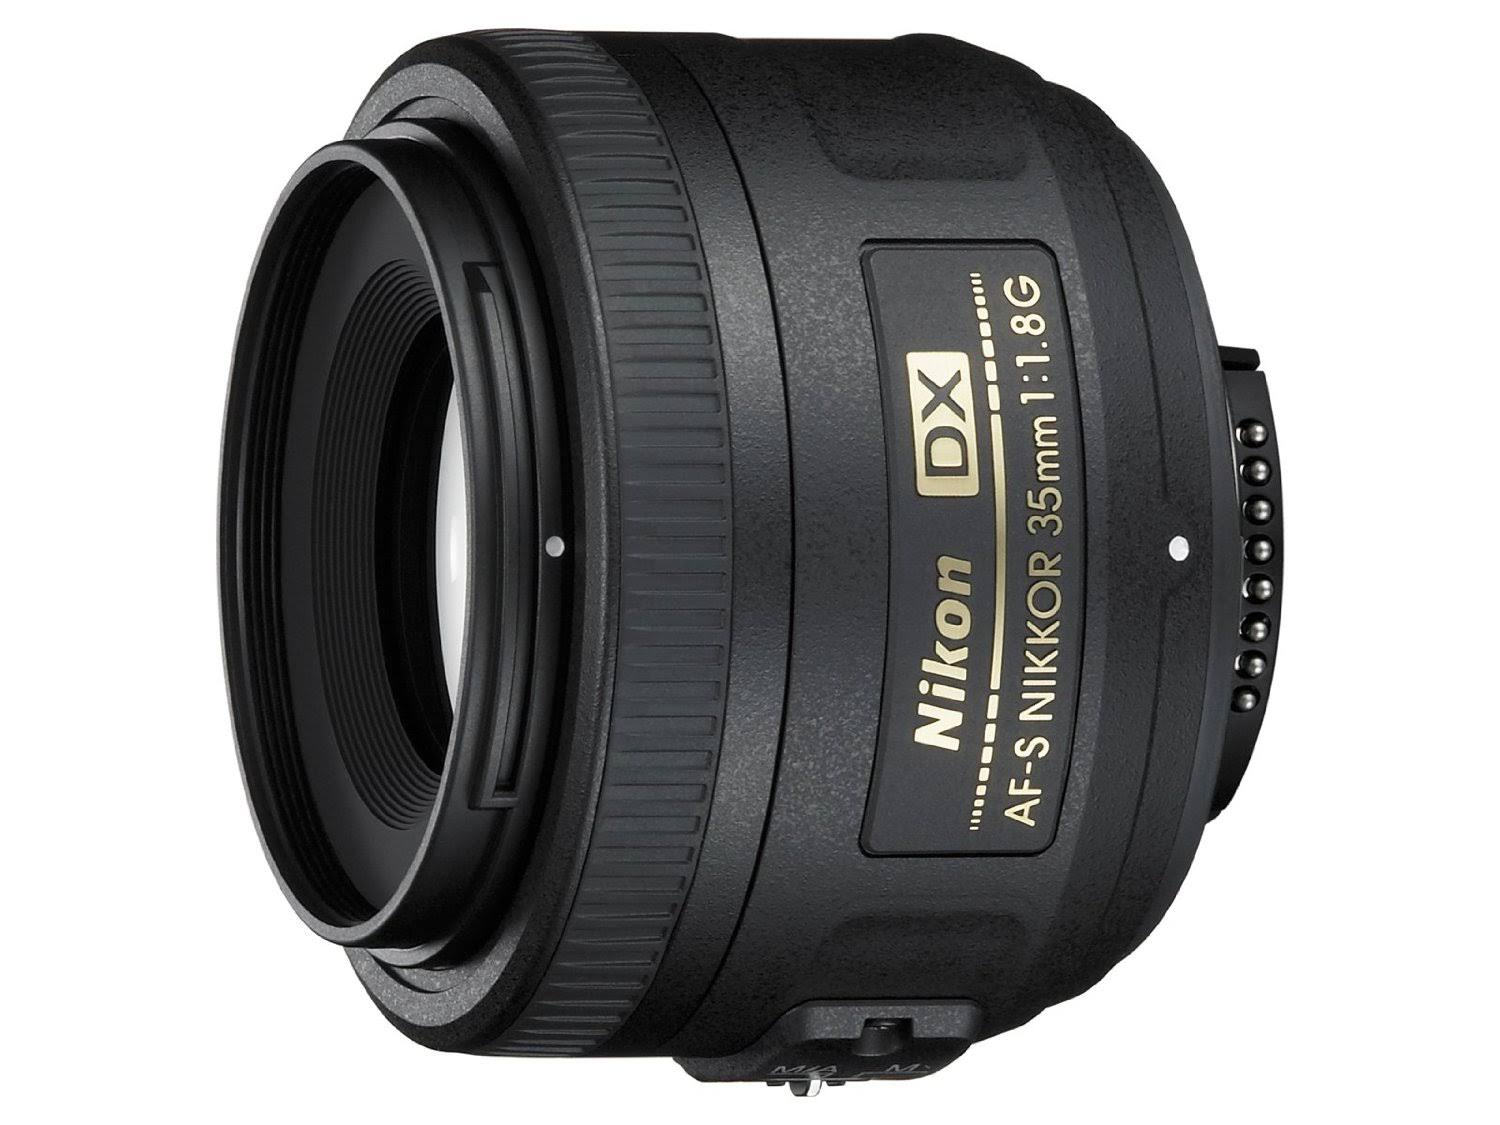 Nikon AF-S DX NIKKOR 35mm f/1.8G Lens with Auto Focus f...